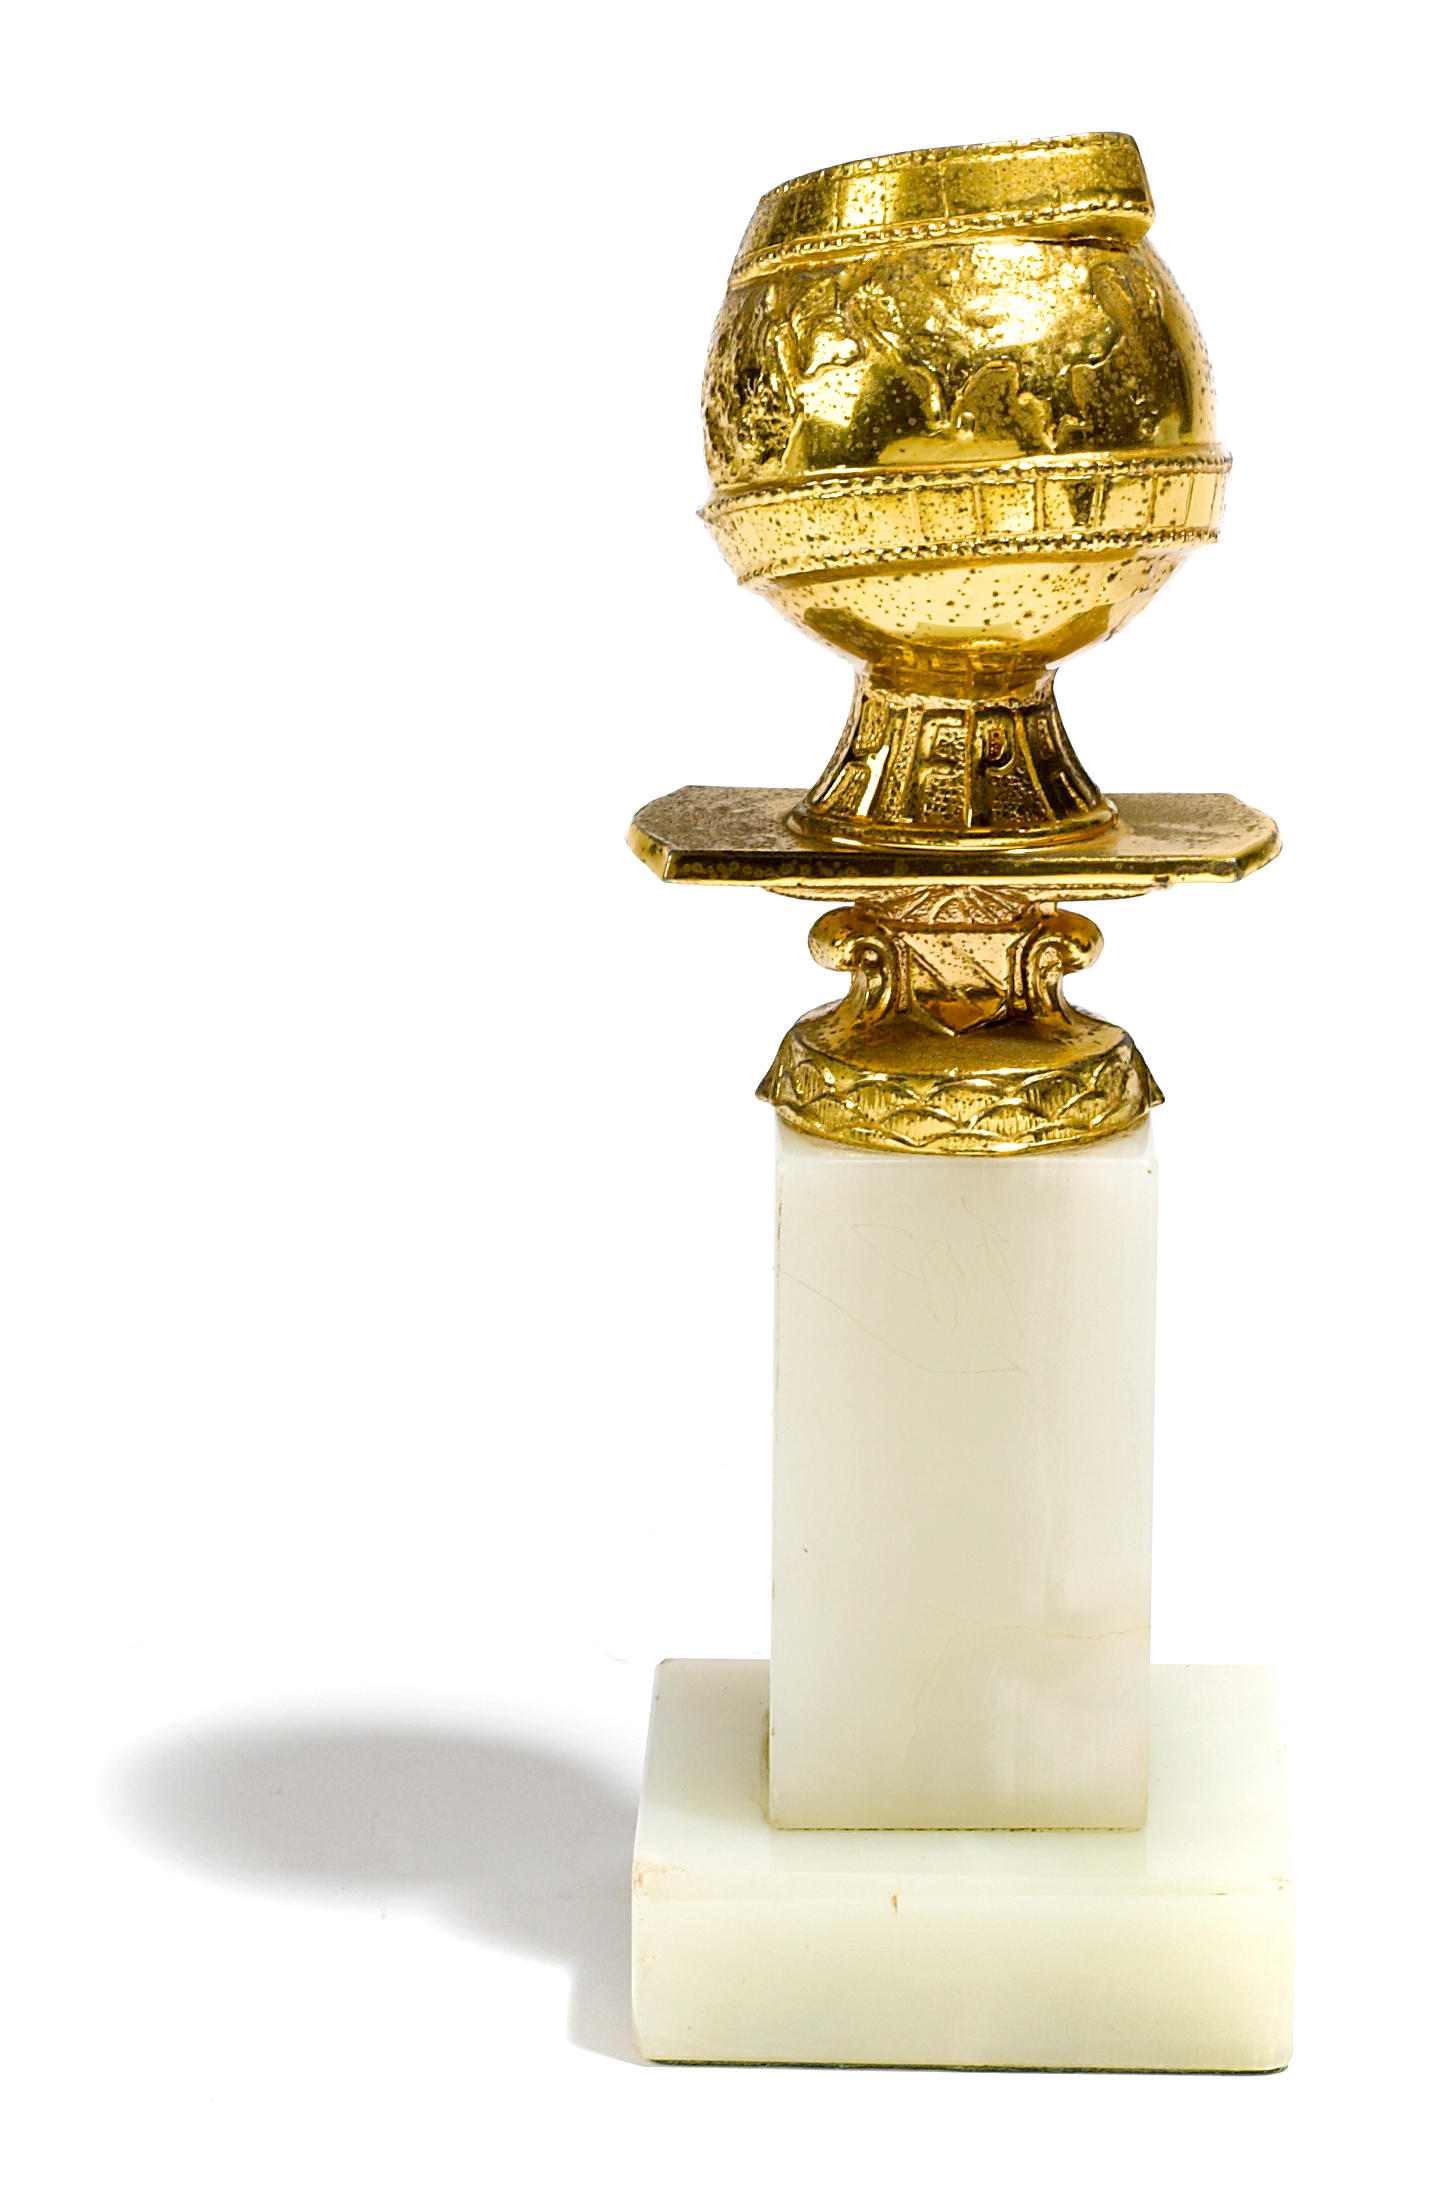 A Barbara Stanwyck Golden Globe award